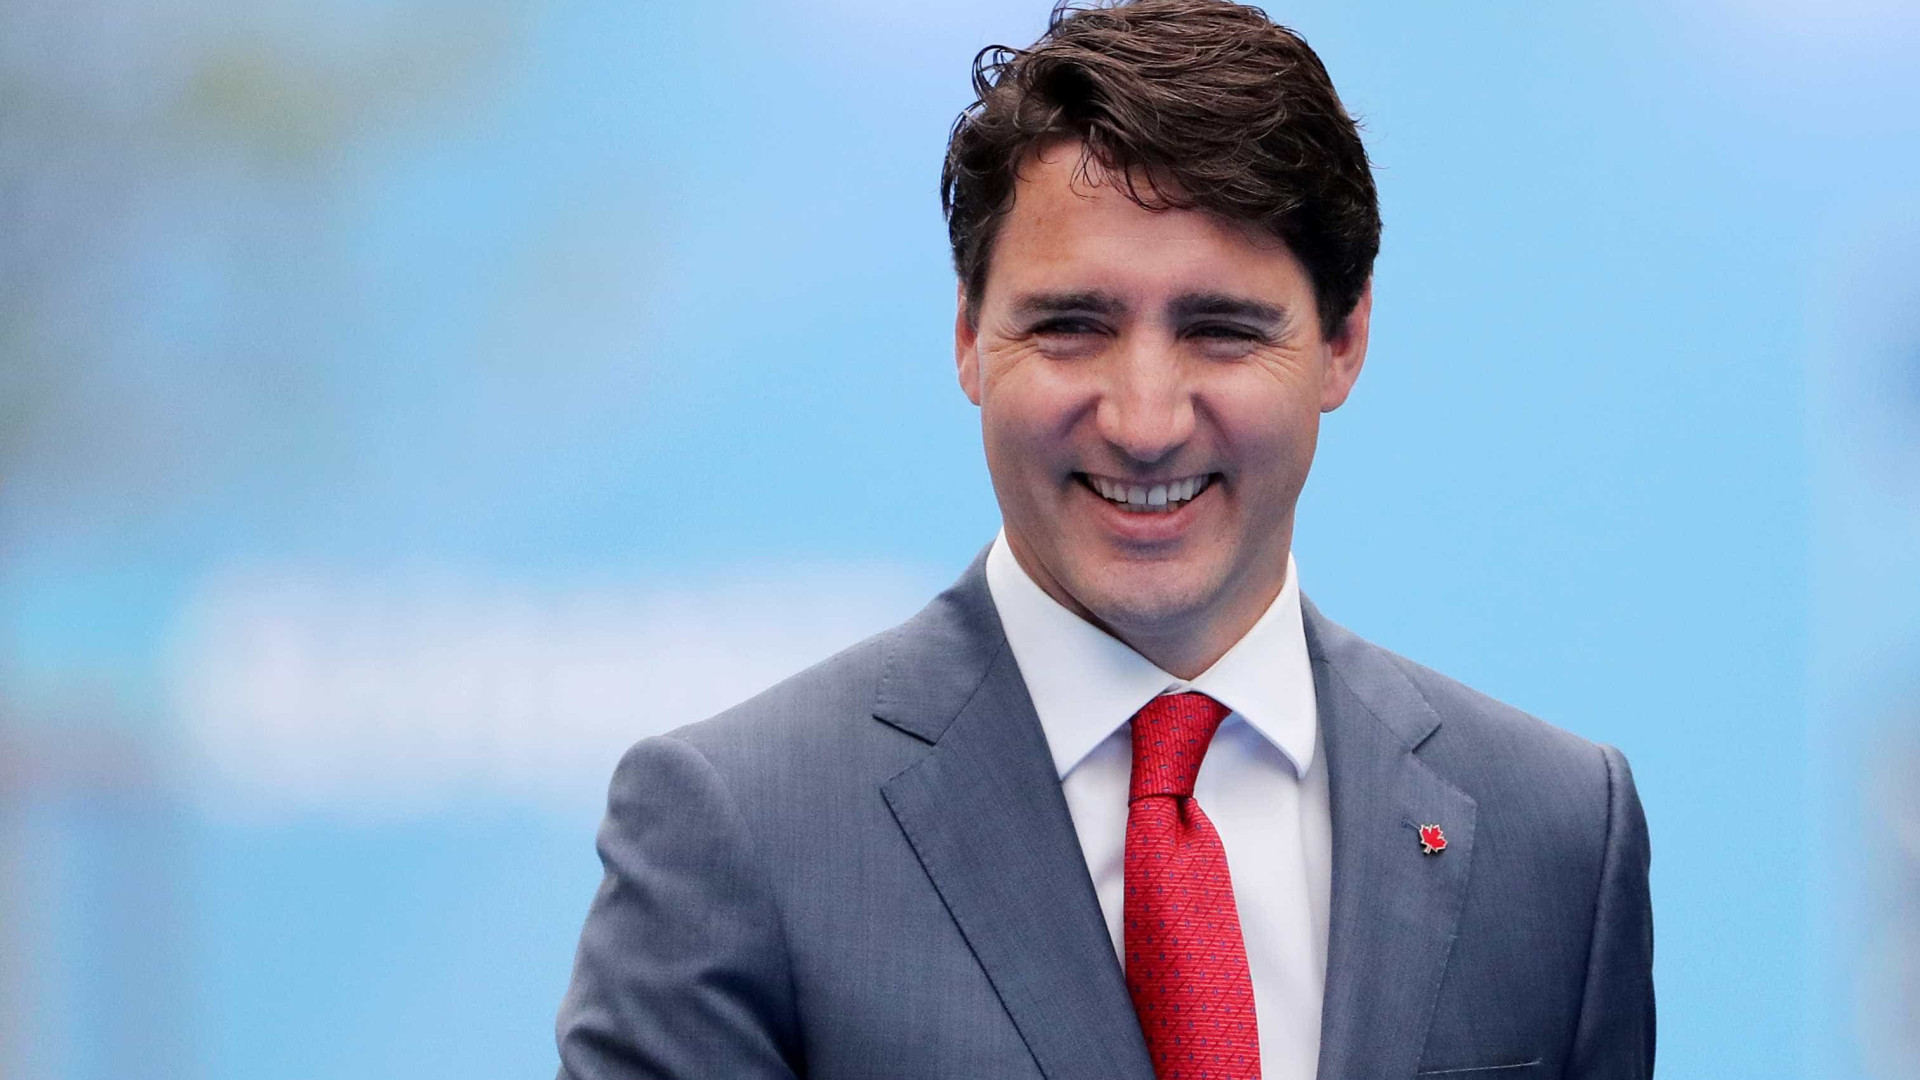 Entenda a crise que ameaça o mandato de Trudeau no Canadá